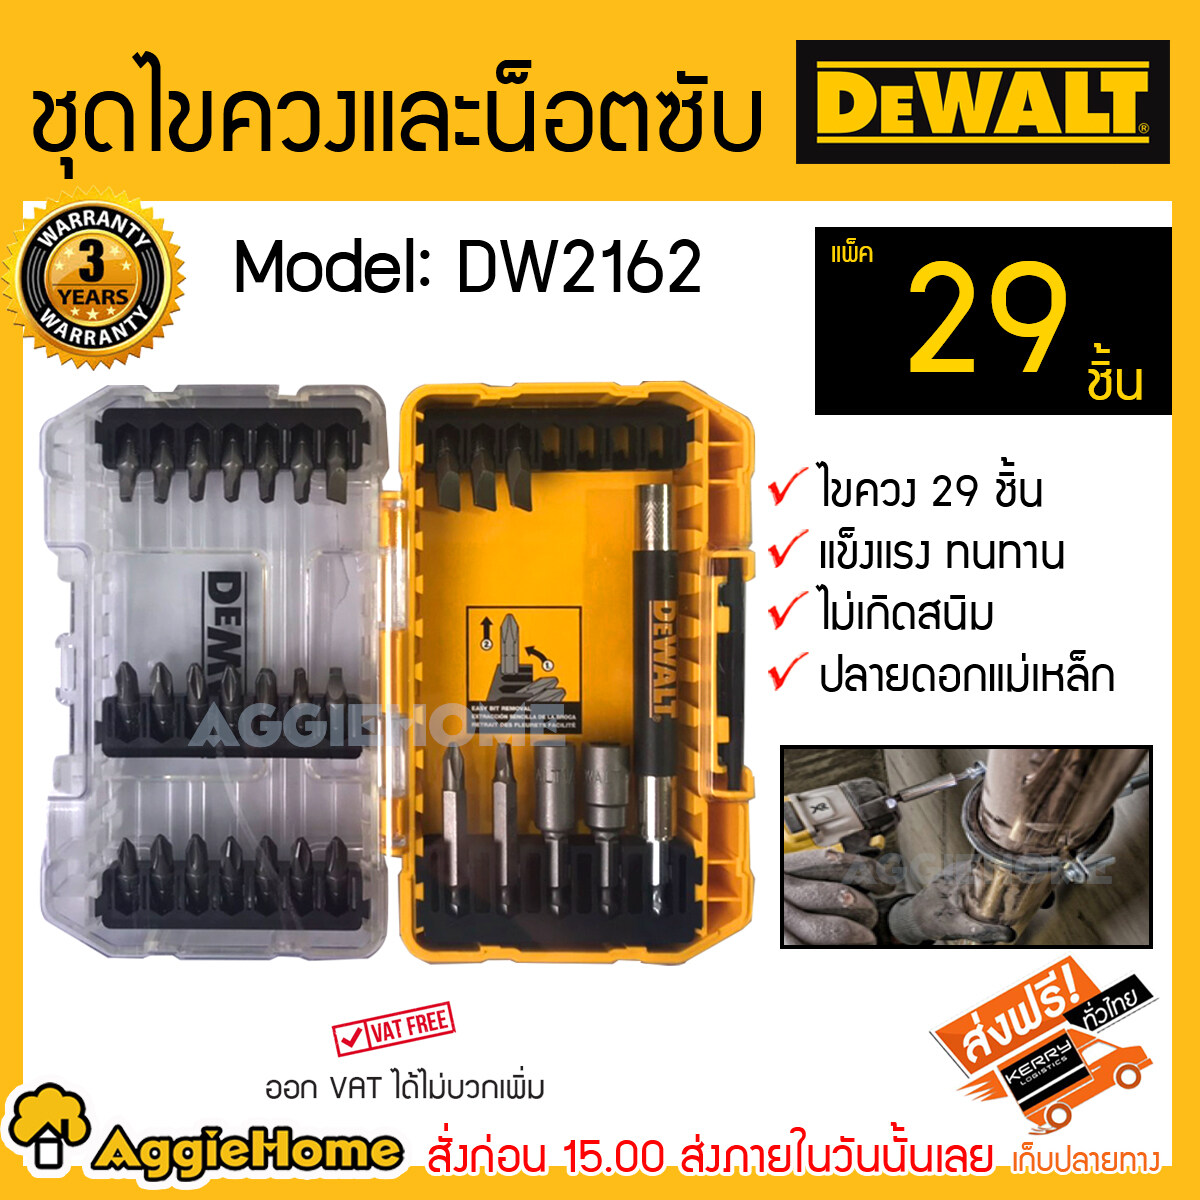 DEWALT ชุดไขควงและน็อตซับ รุ่น DW2162